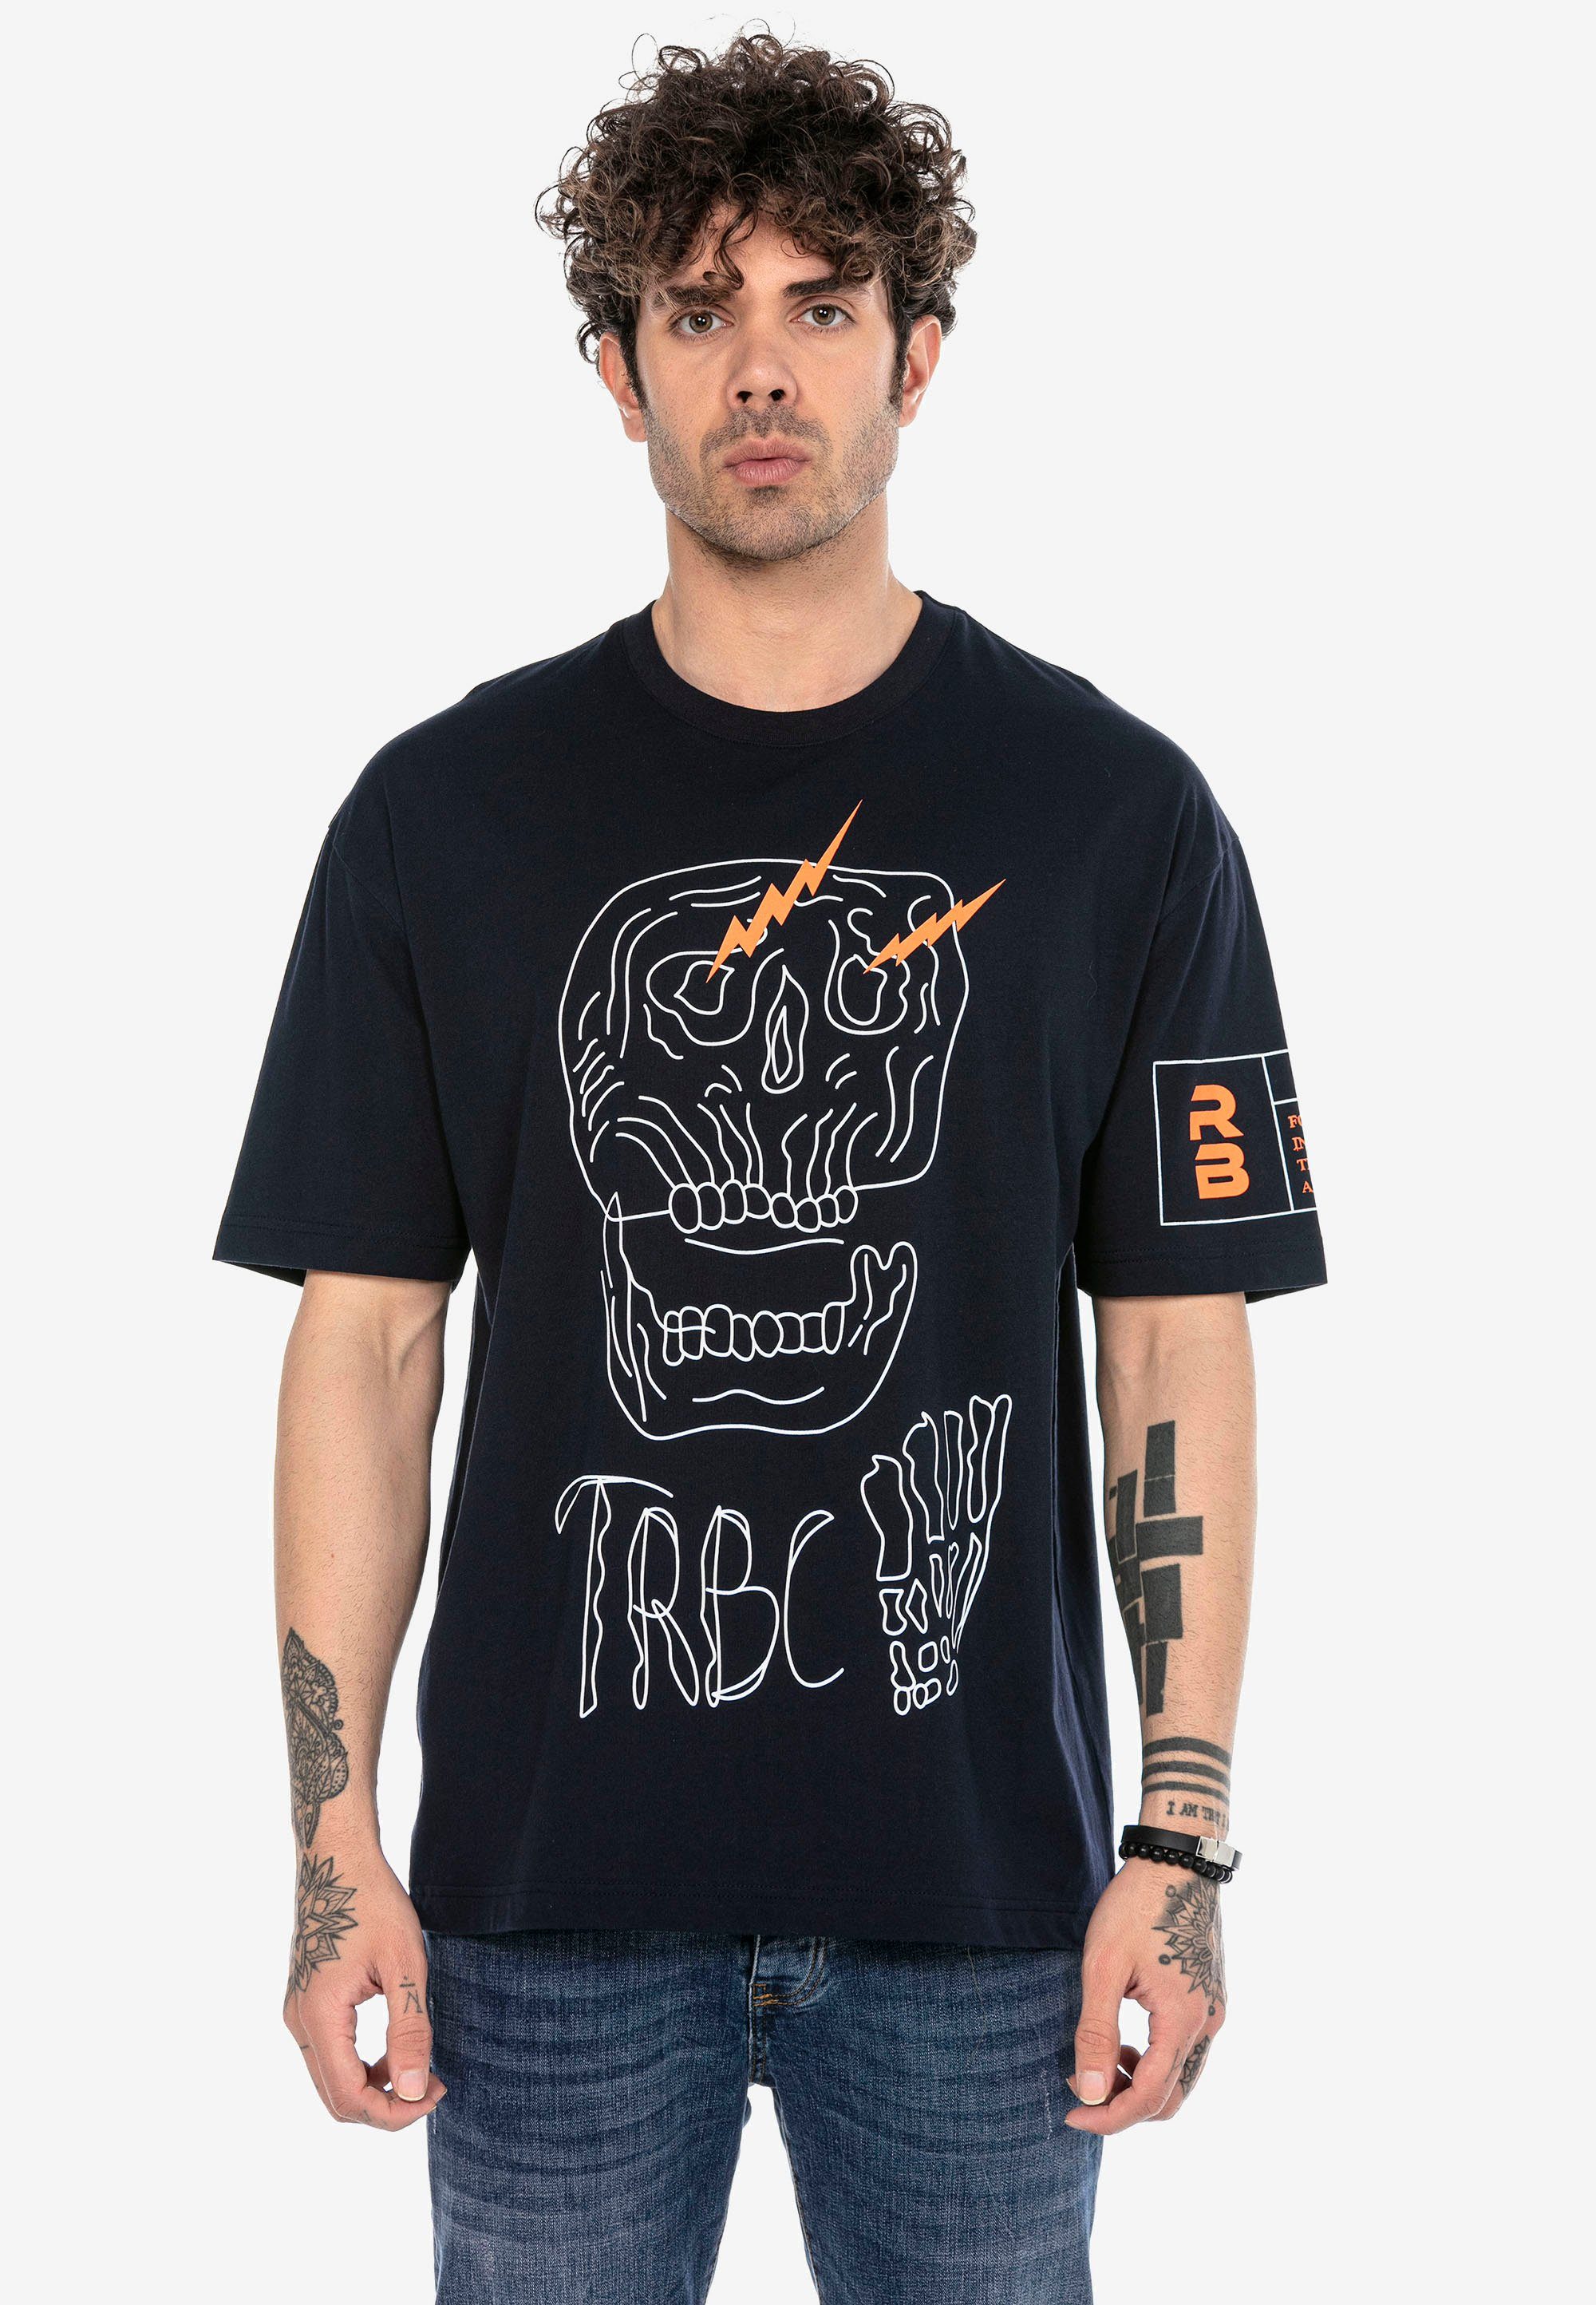 stylischem T-Shirt mit RedBridge dunkelblau Totenkopf-Print McAllen